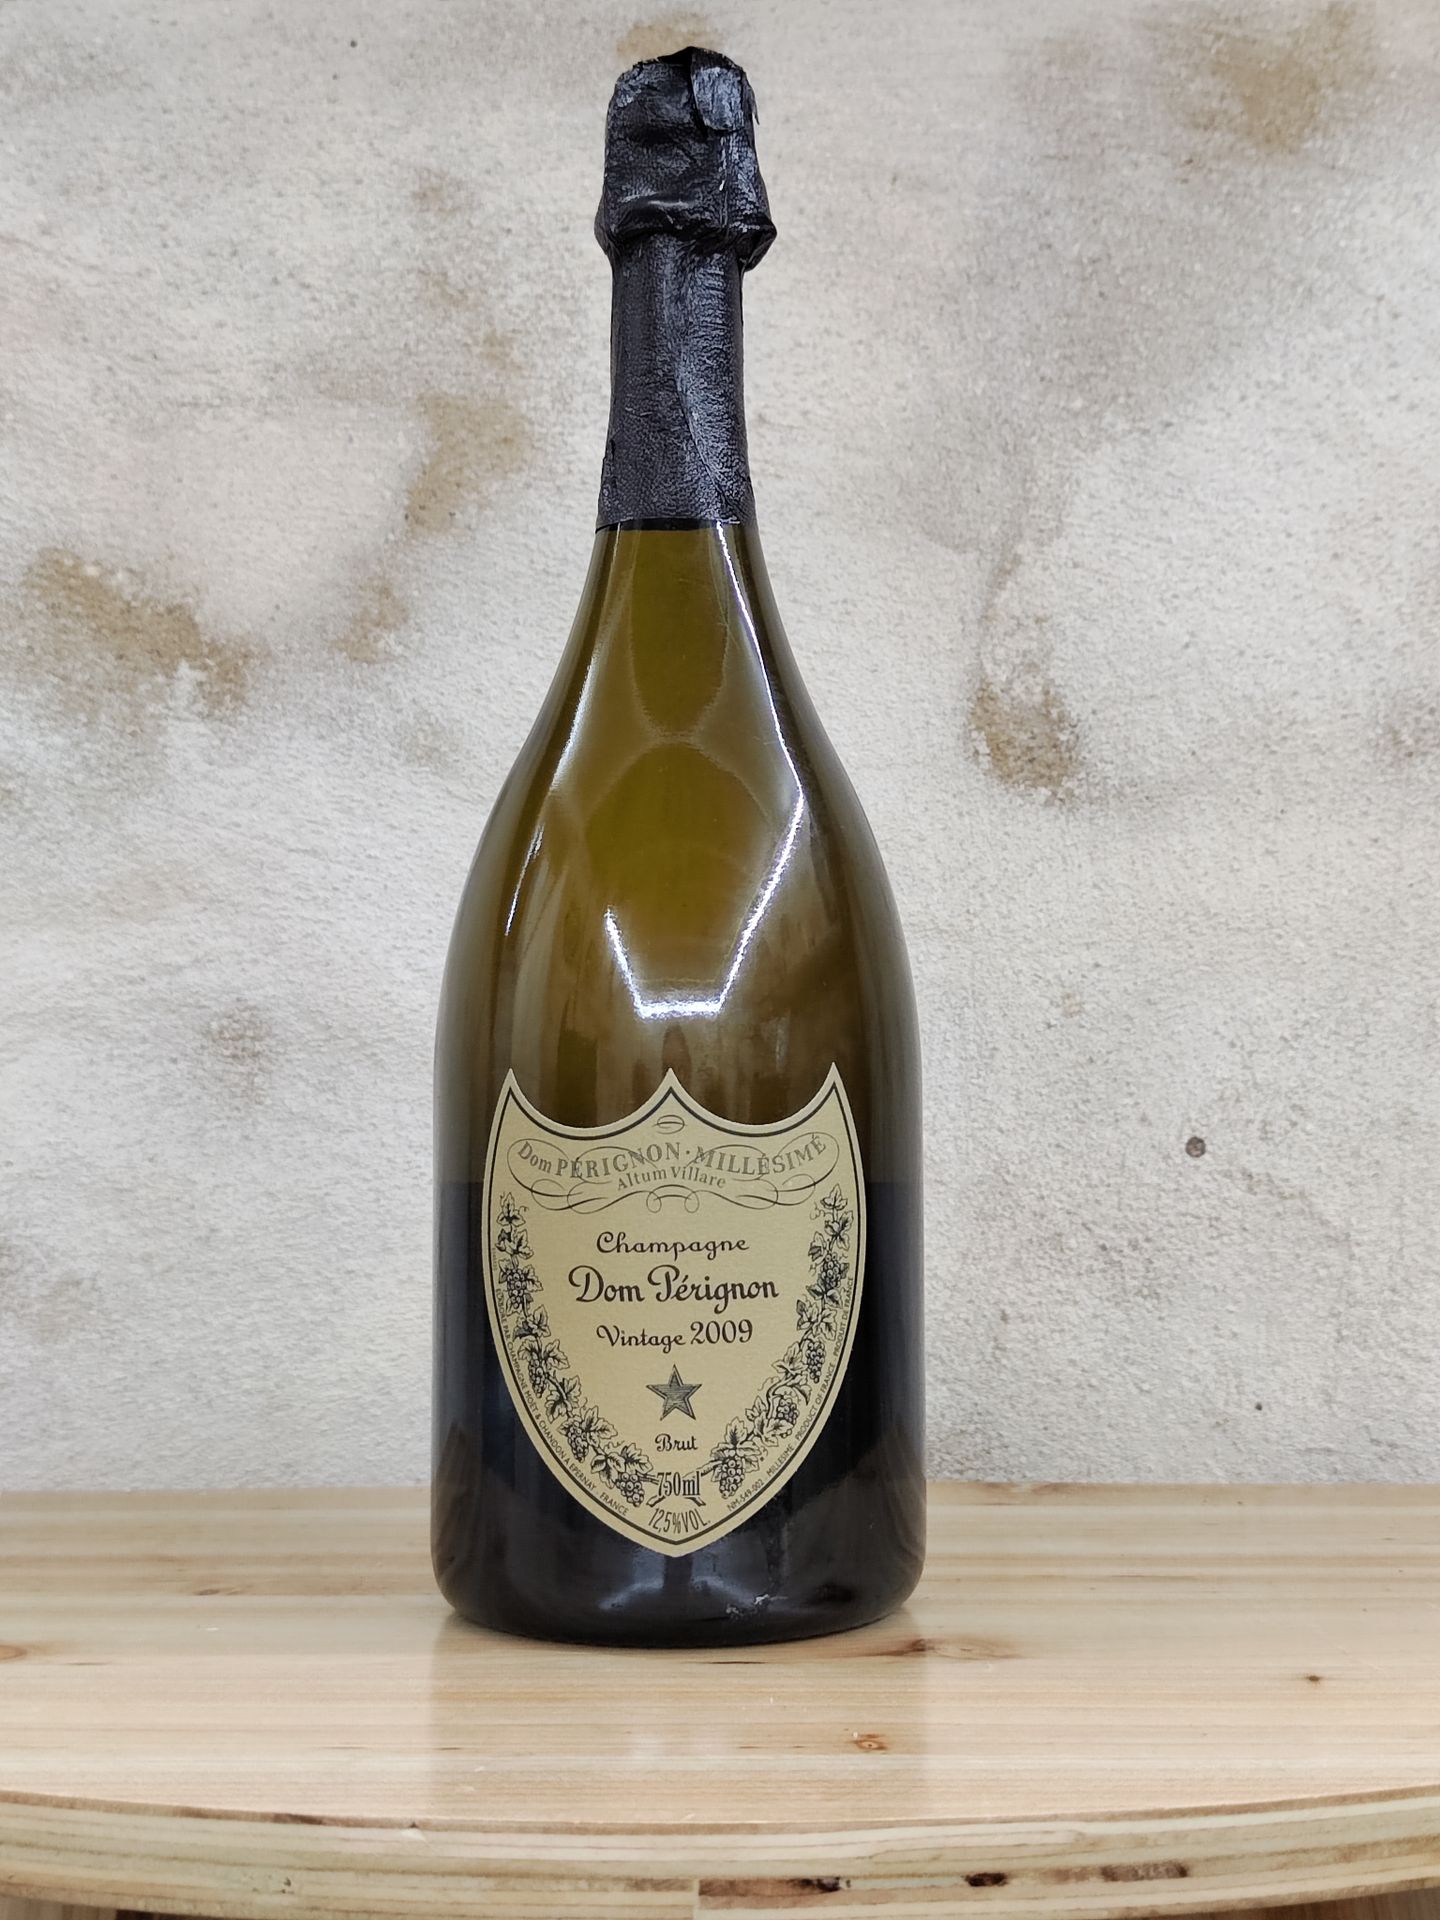 Null 1 bottiglia di champagne DOM PERIGNON brut, annata 2009.
Nella sua scatola.